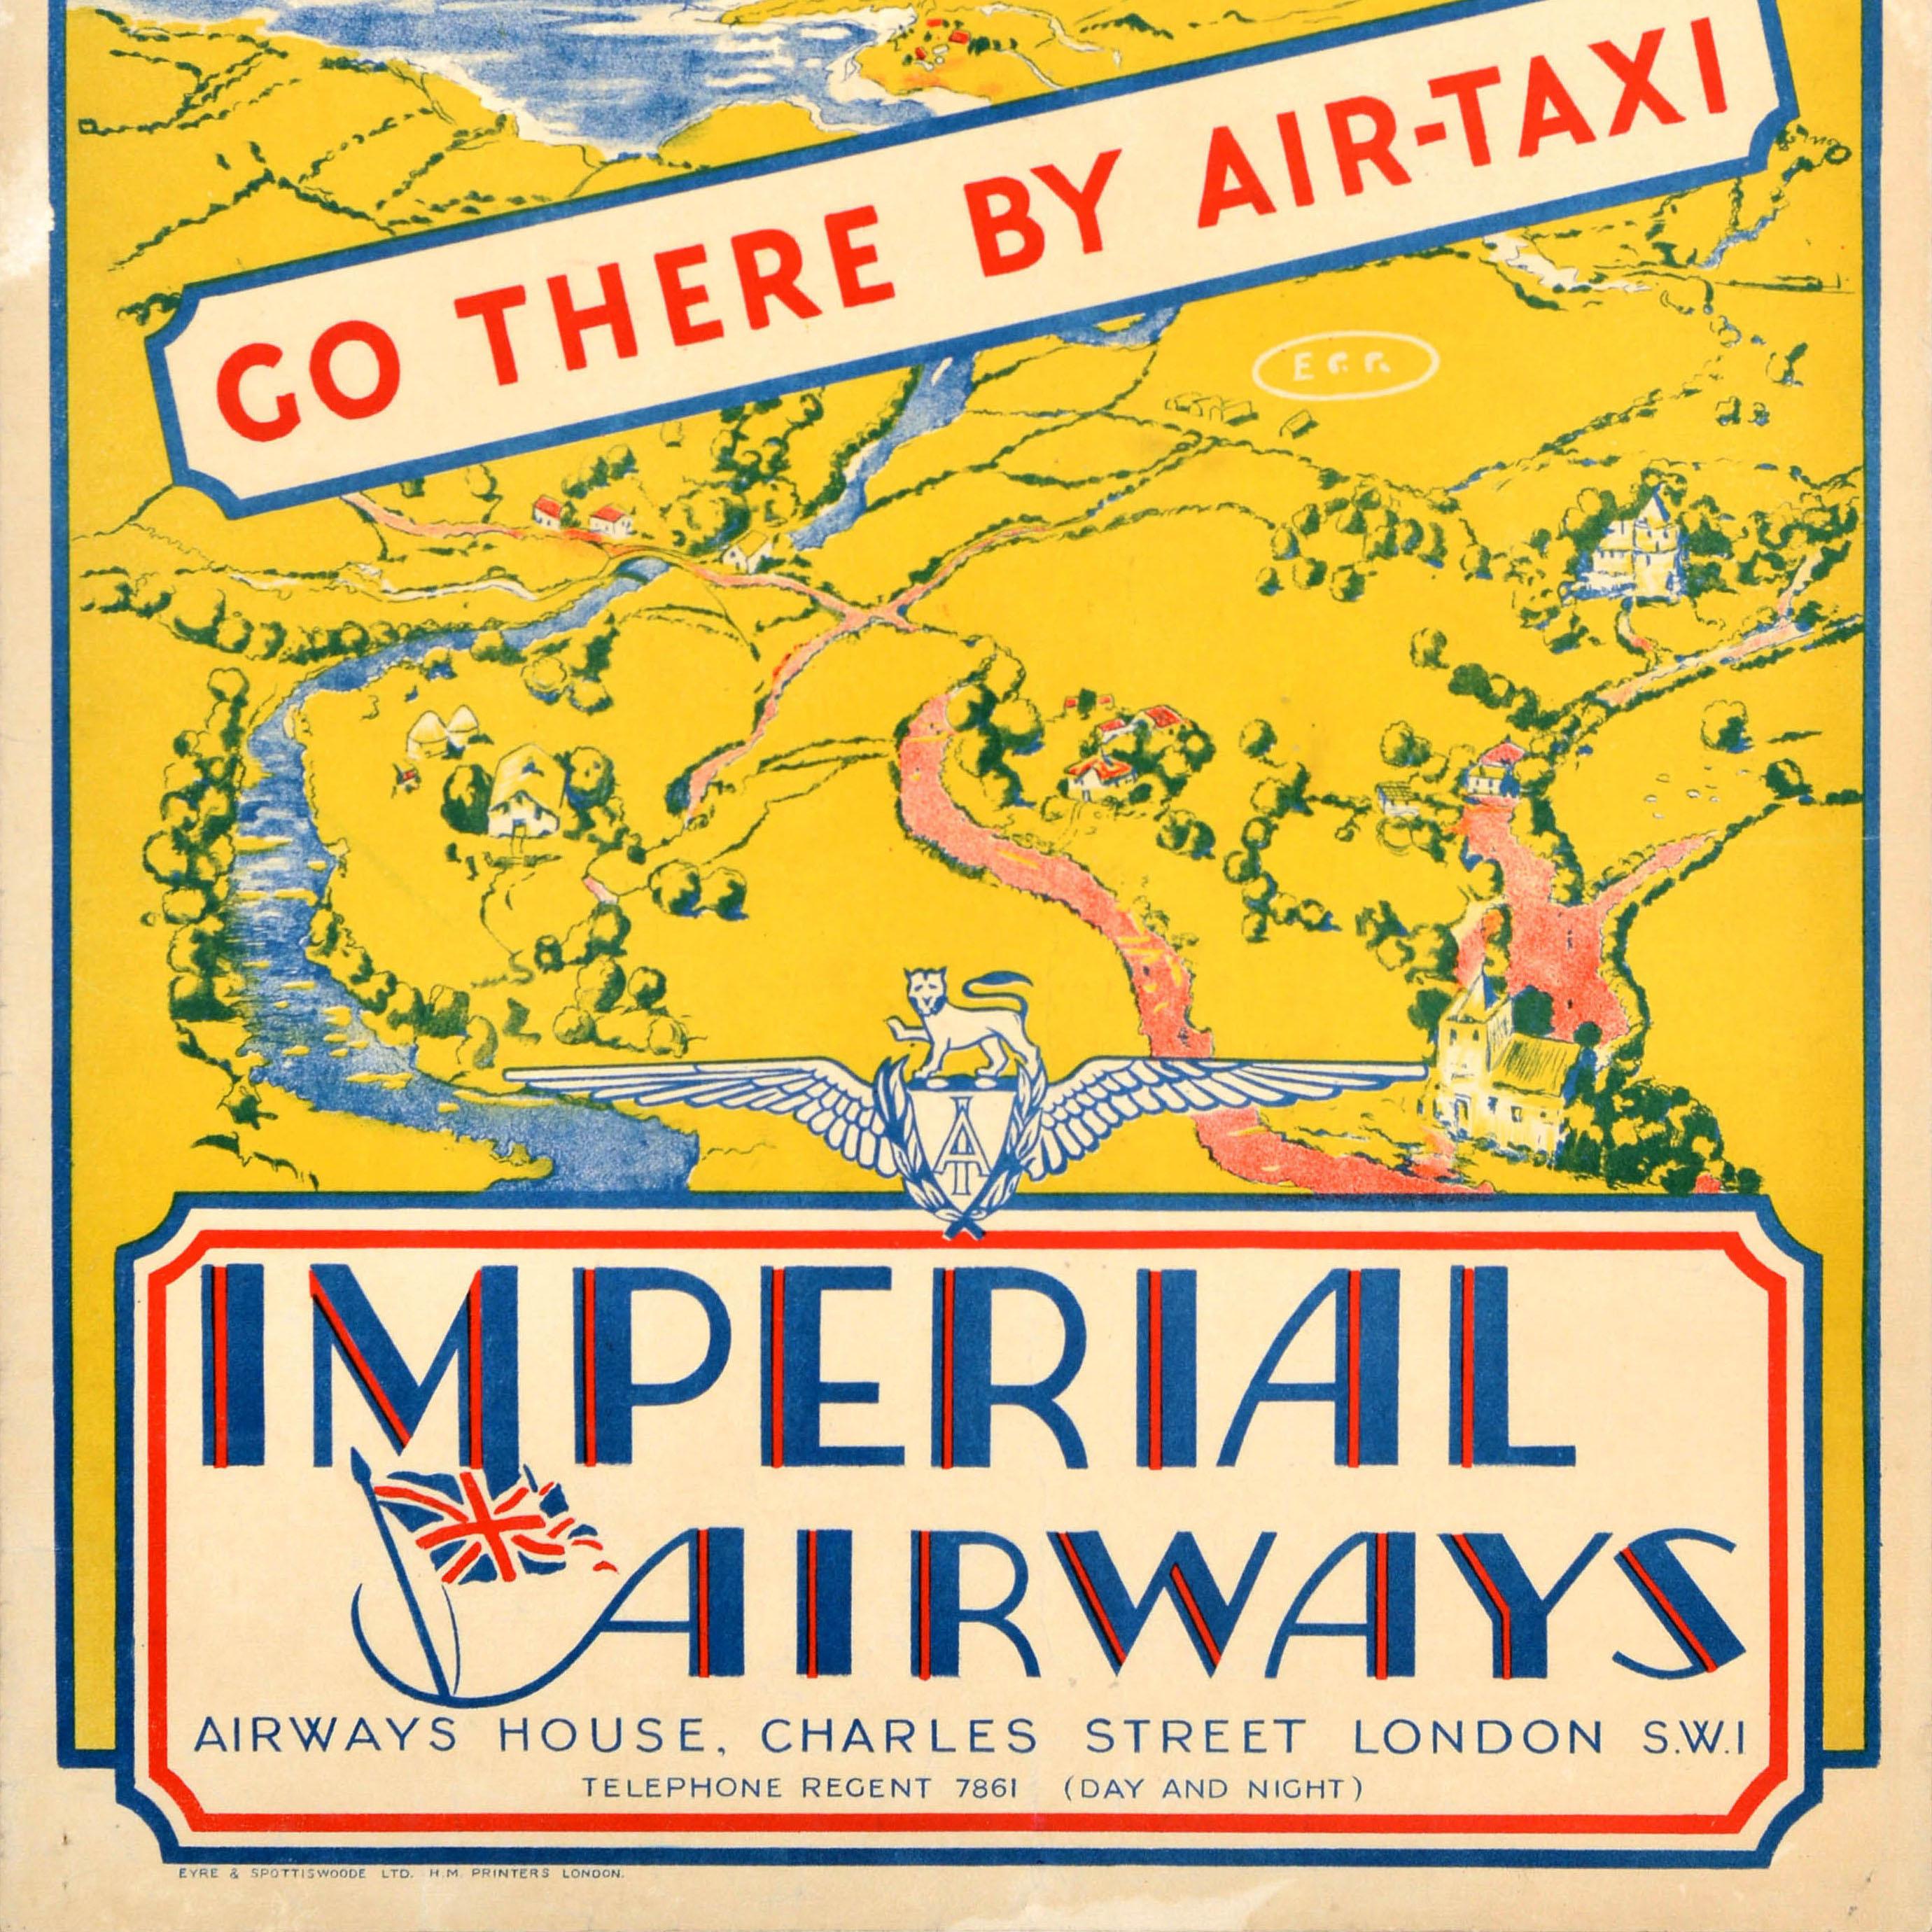 Original Vintage-Reise-Werbeplakat für Imperial Airways Go There By Air-Taxi mit einer großen Illustration eines Propellerflugzeugs in Blau, das über einen Fluss fliegt, der zwischen Feldern und Gebäuden in der Landschaft unten verläuft, dem Meer